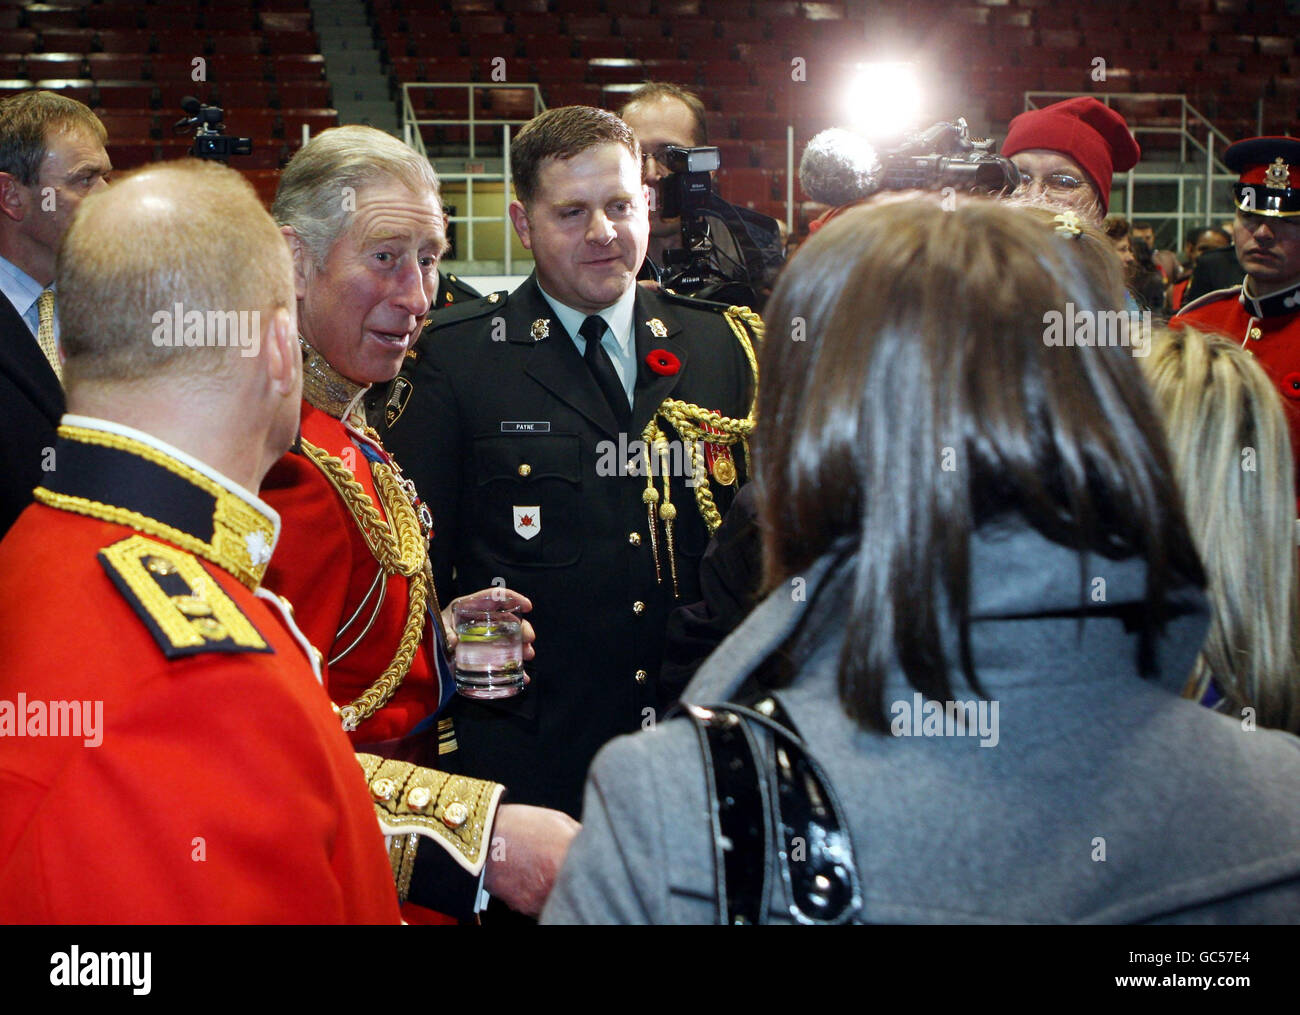 Der Prinz von Wales im Varsity Stadium in Toronto, Kanada, wo seine Königliche Hoheit dem Royal Regiment of Canada und dem Toronto Scottish Regiment die neuen Farben präsentierte. Stockfoto